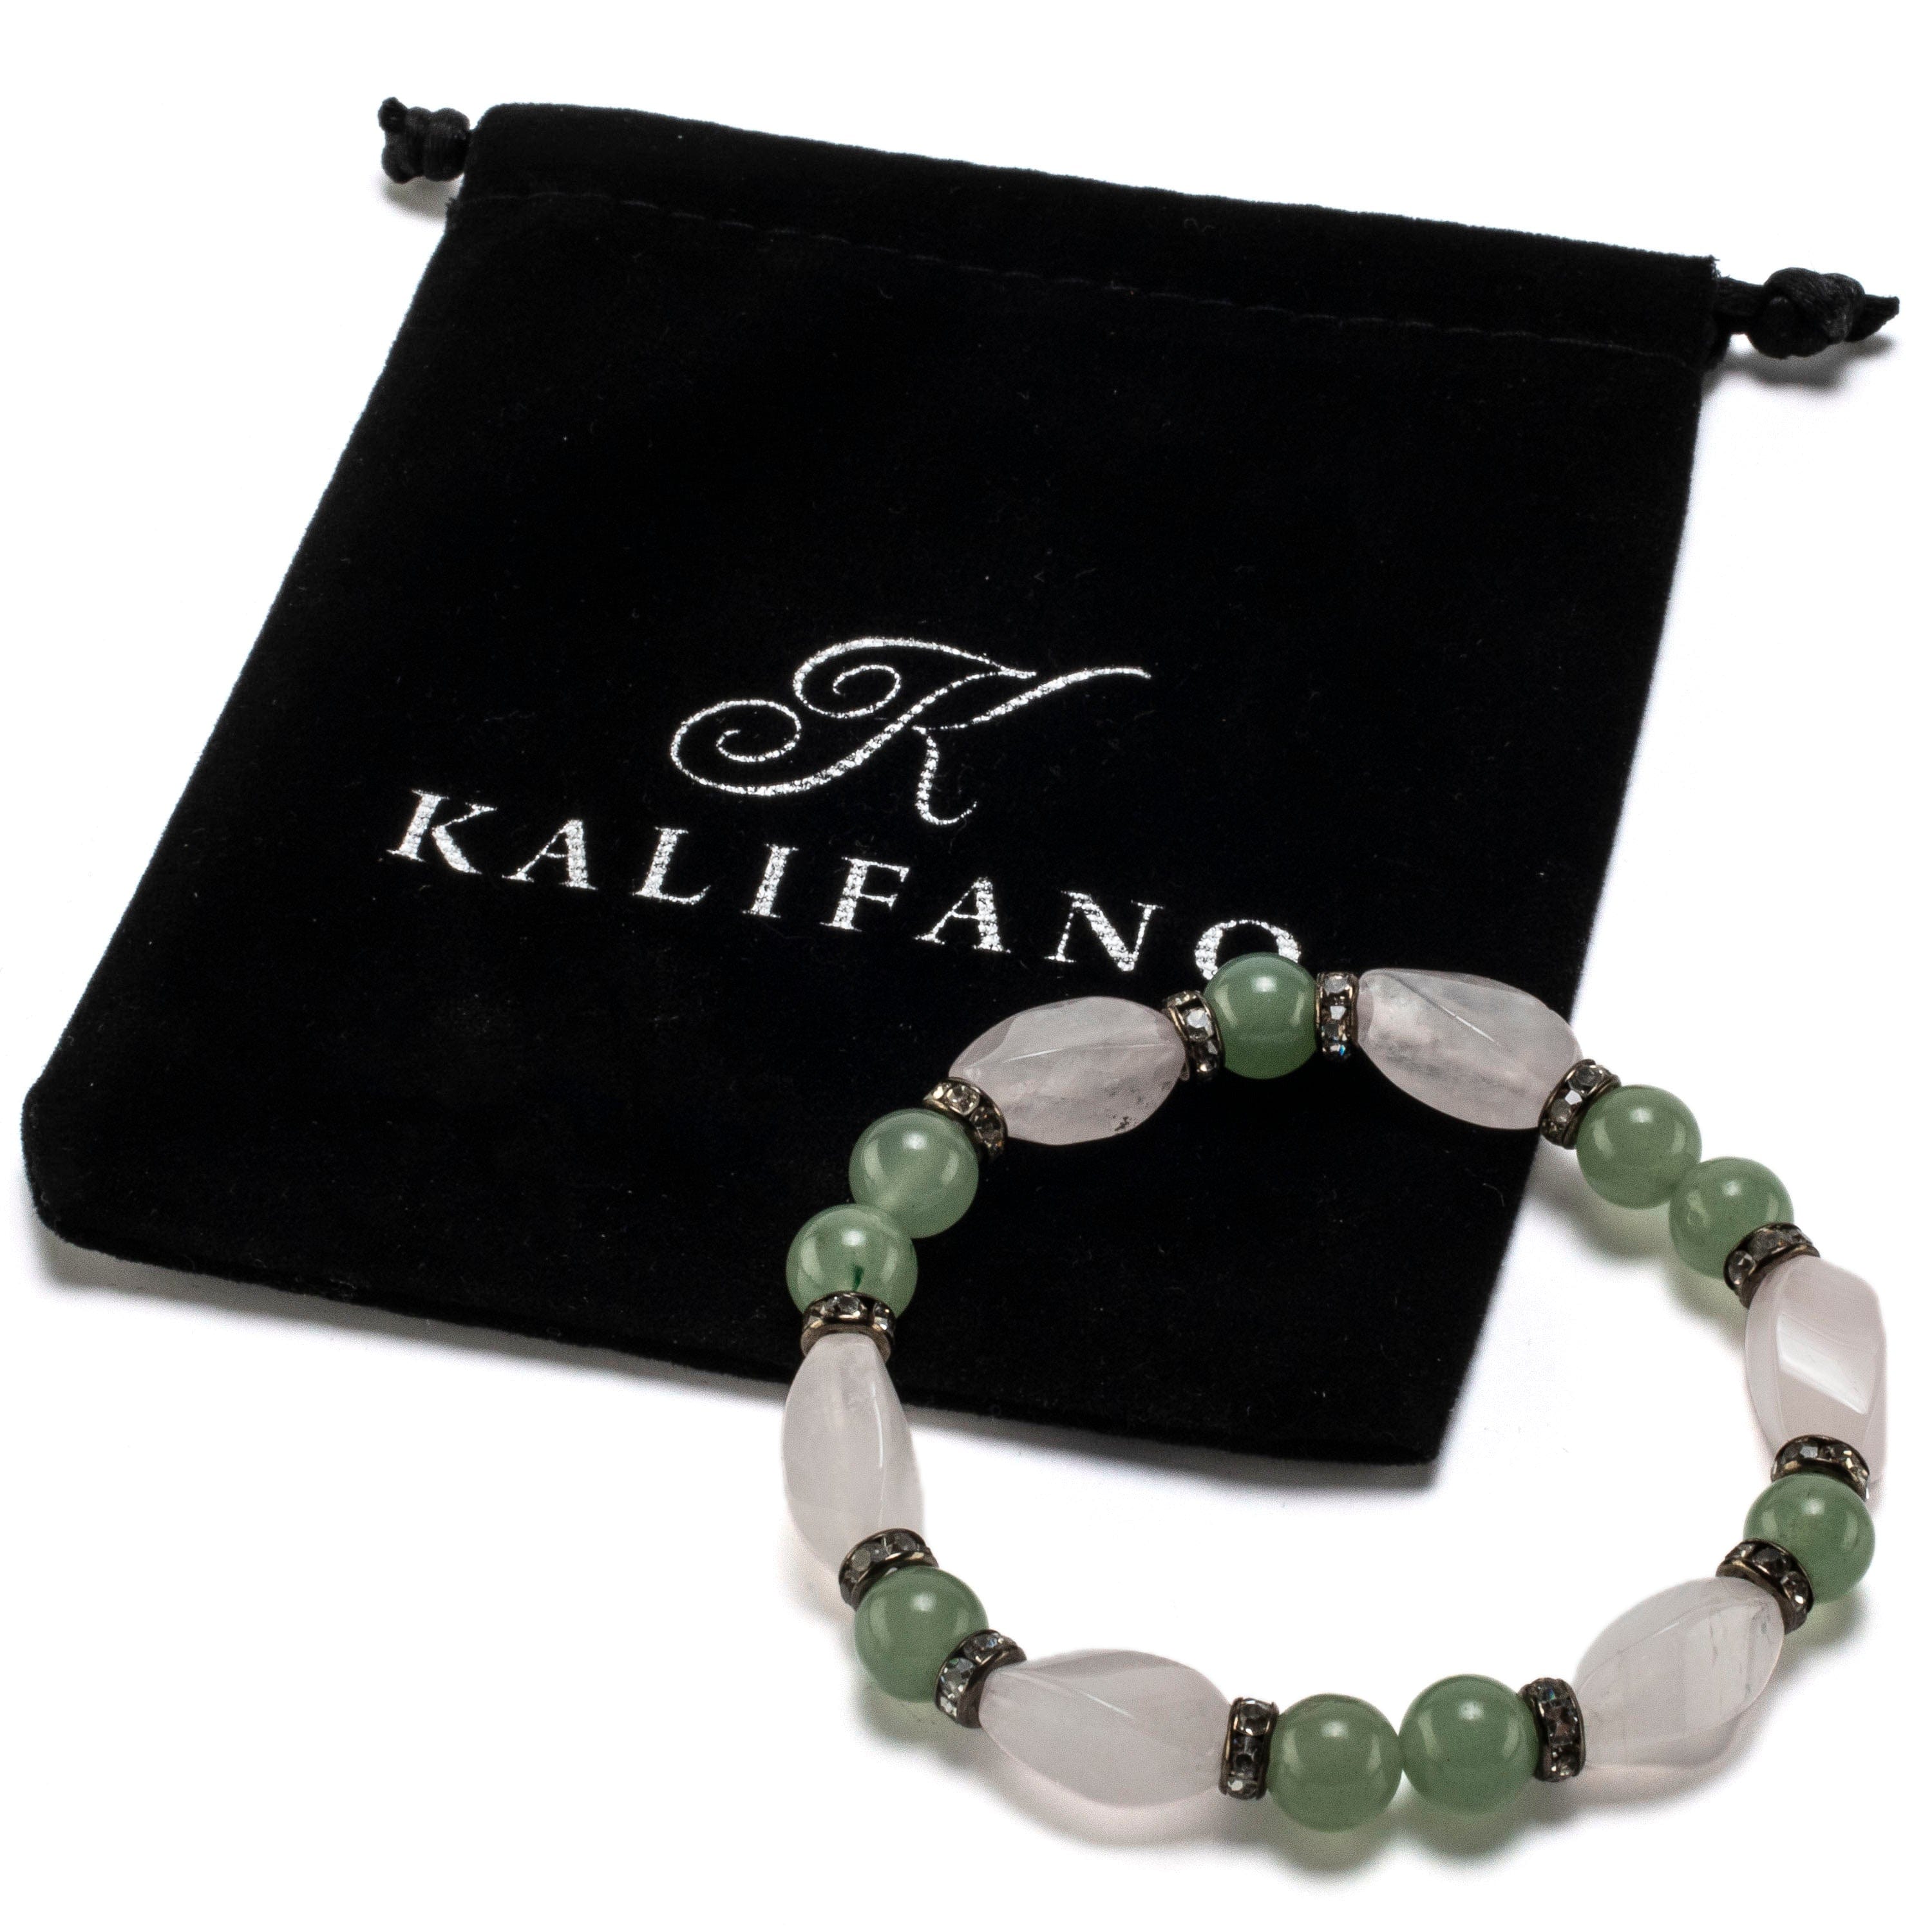 Kalifano Gemstone Bracelets Rose Quartz Twisted Bead and Round Aventurine with Crystal Accent Beads Gemstone Elastic Bracelet BLUE-BGP-029